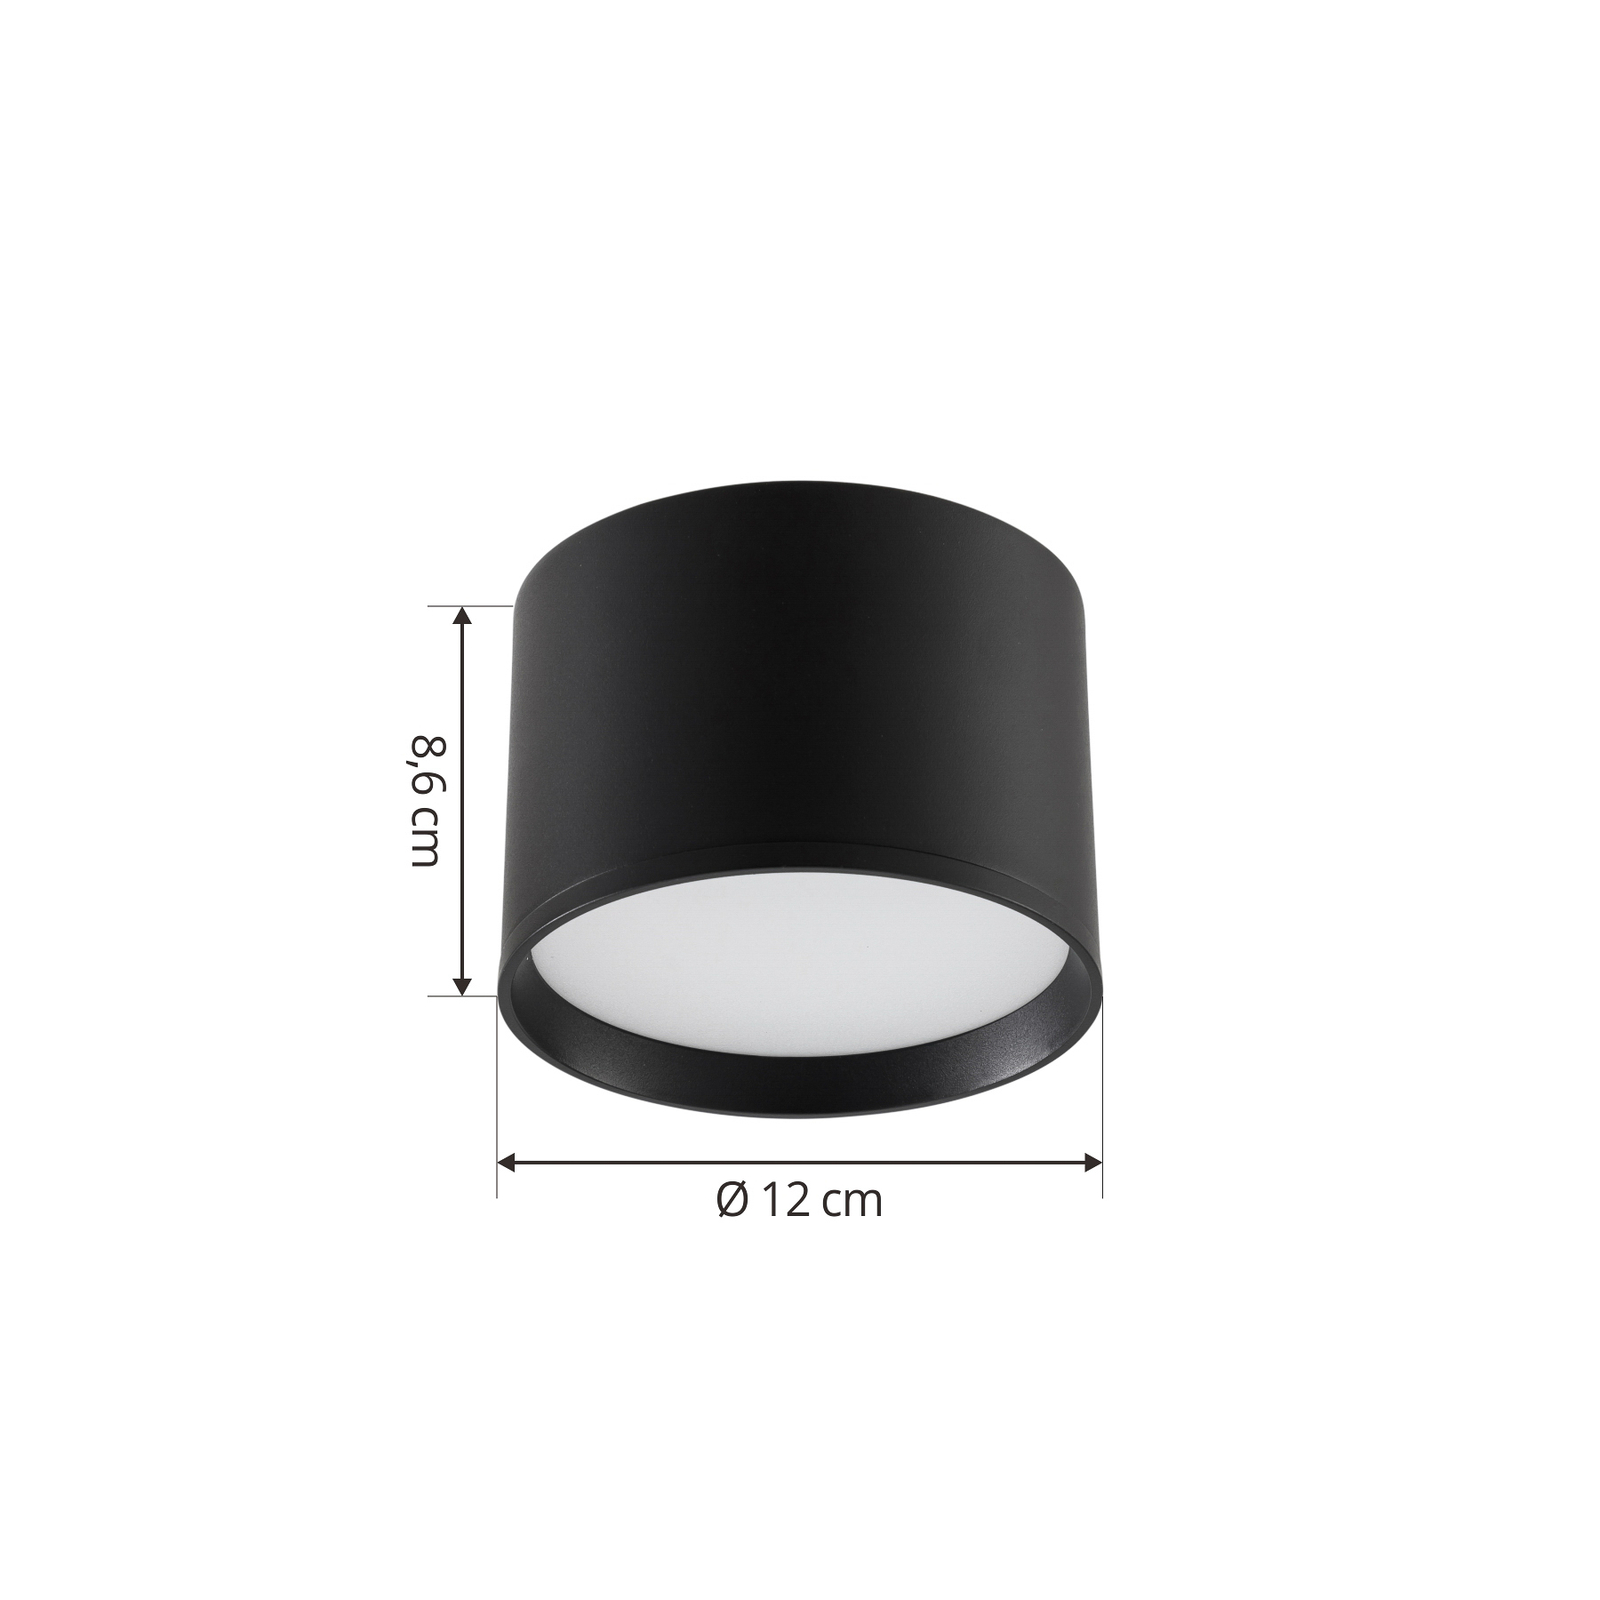 Lindby spot LED Nivoria, Ø 12 cm, noir sable, set de 4 pièces